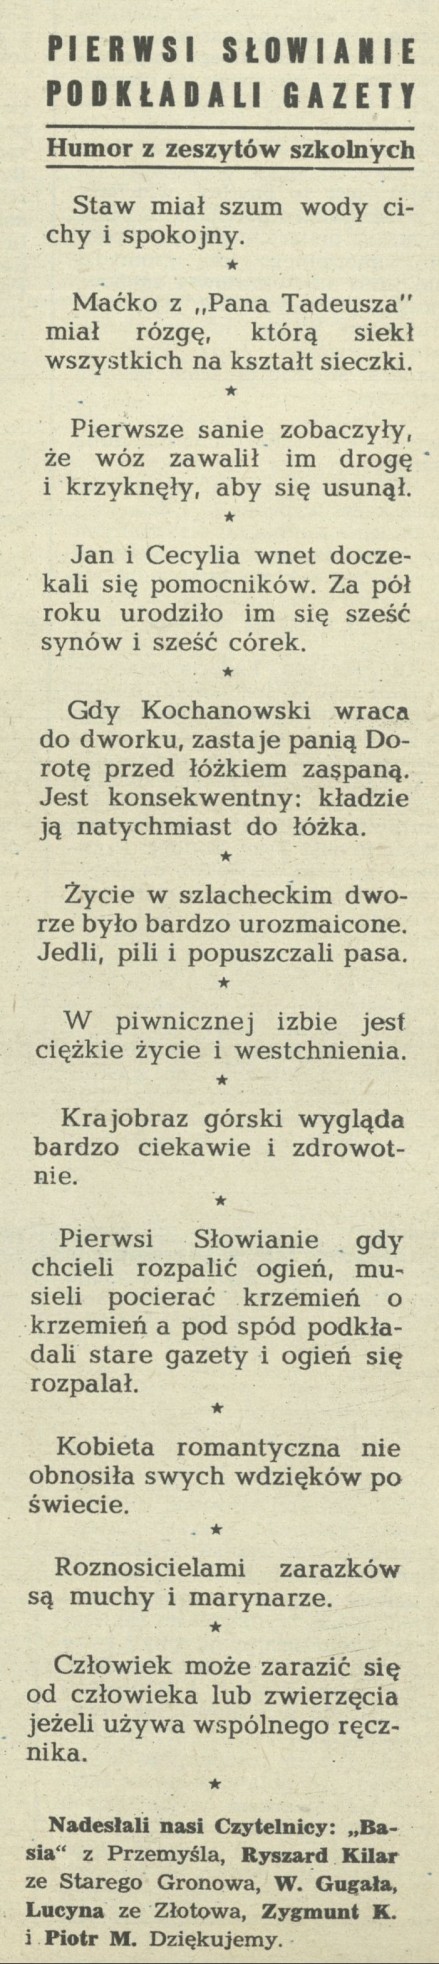 Pierwsi Słowianie podkładali gazety